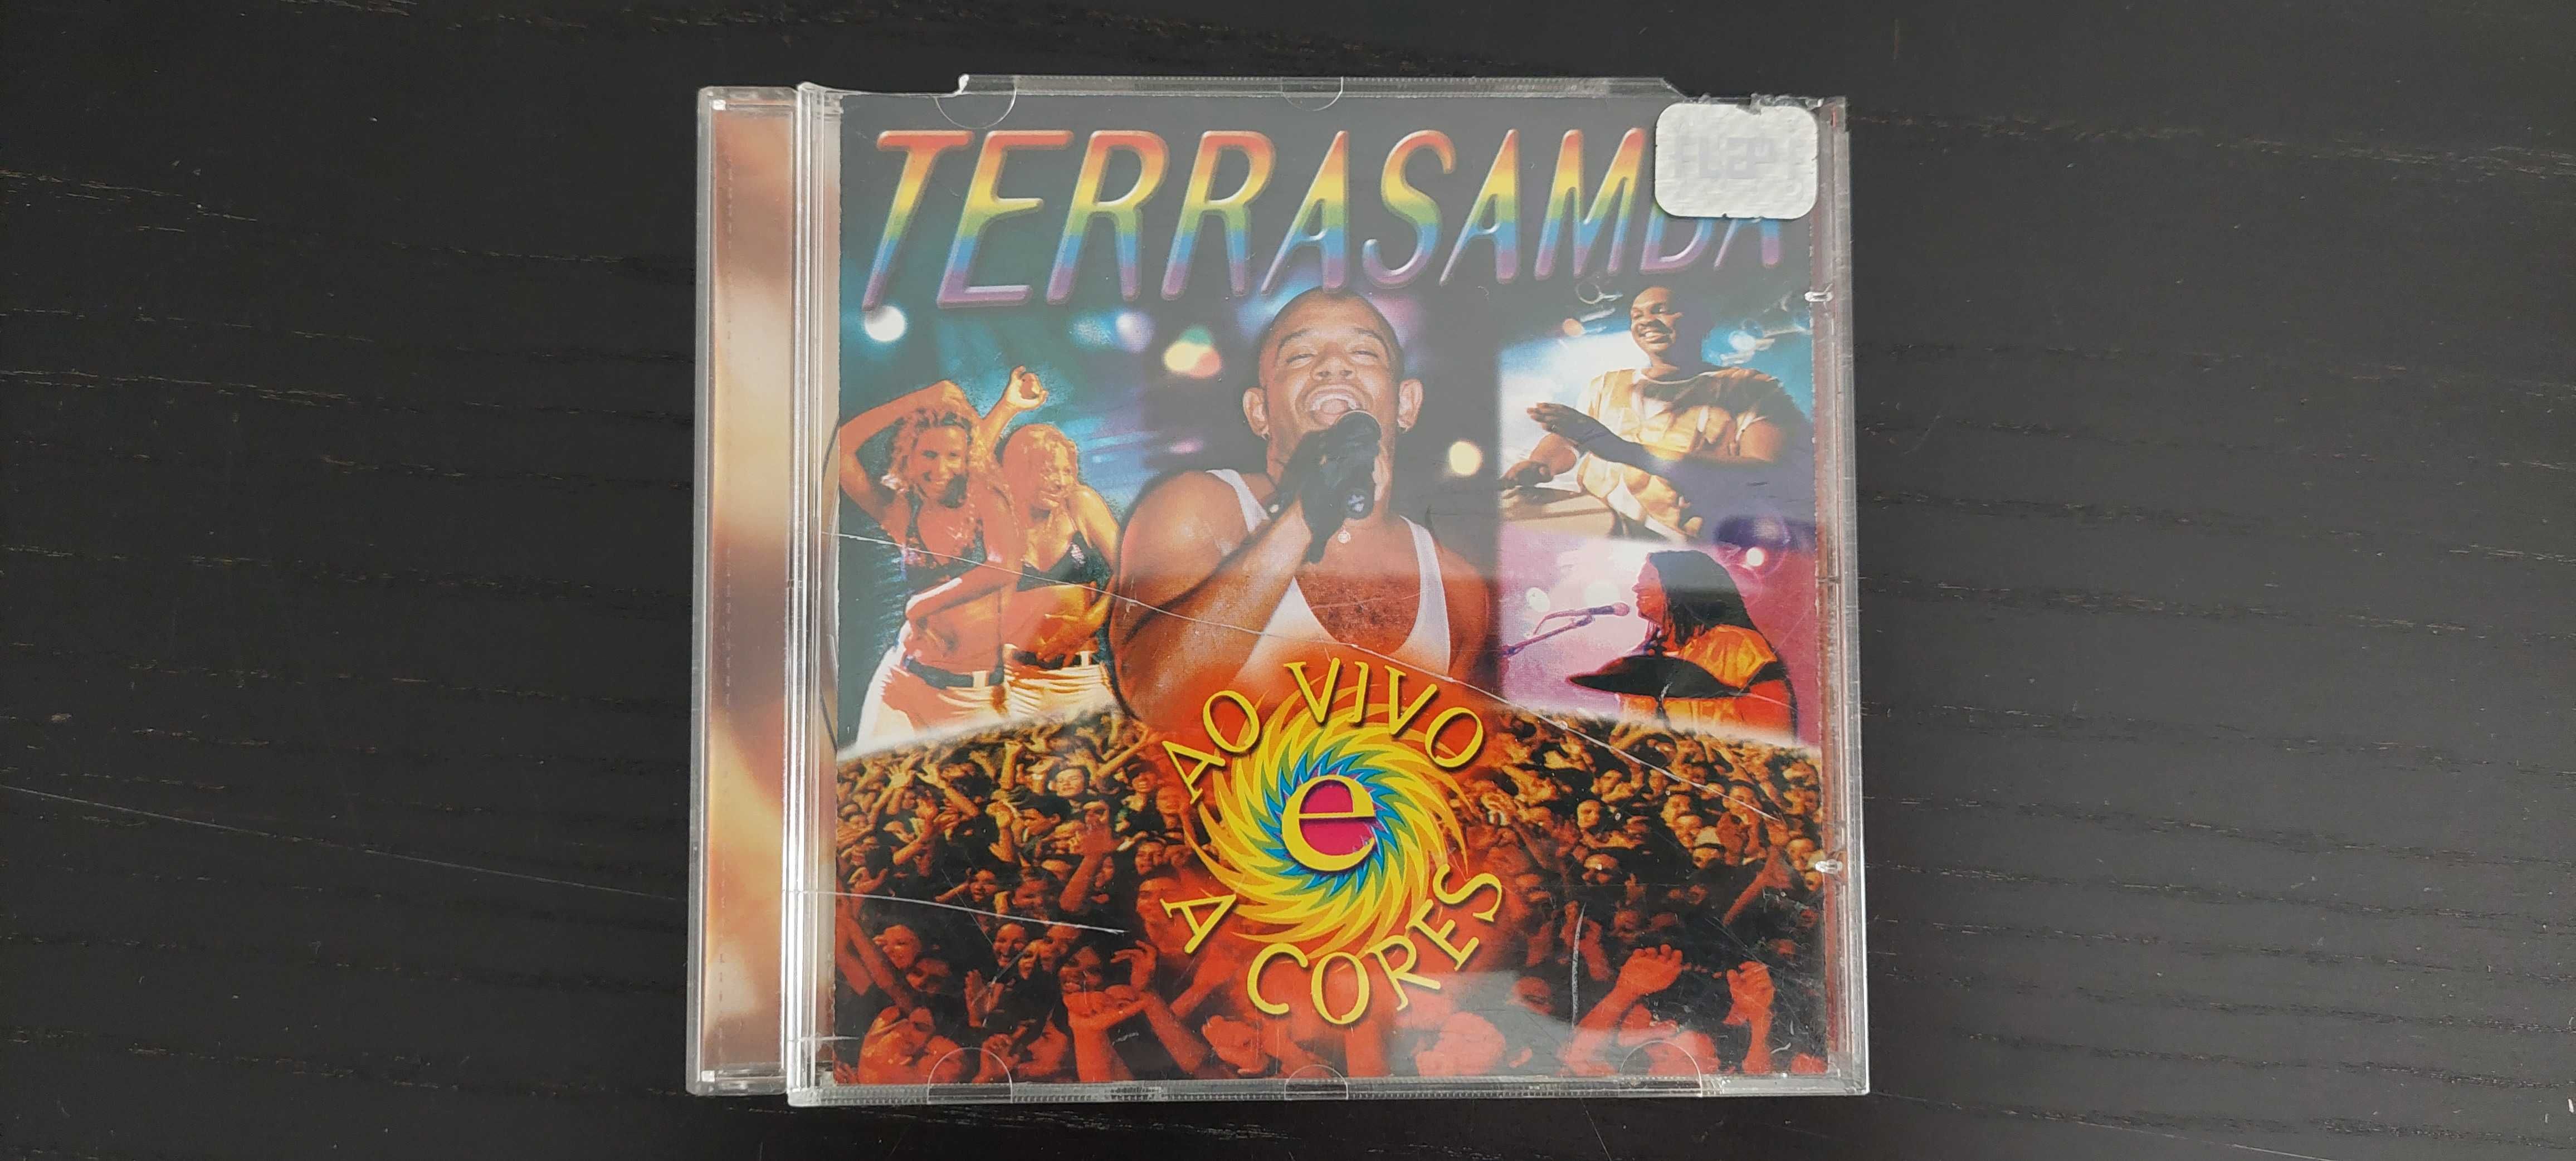 CD Original Terrasamba – ao vivo e a cores